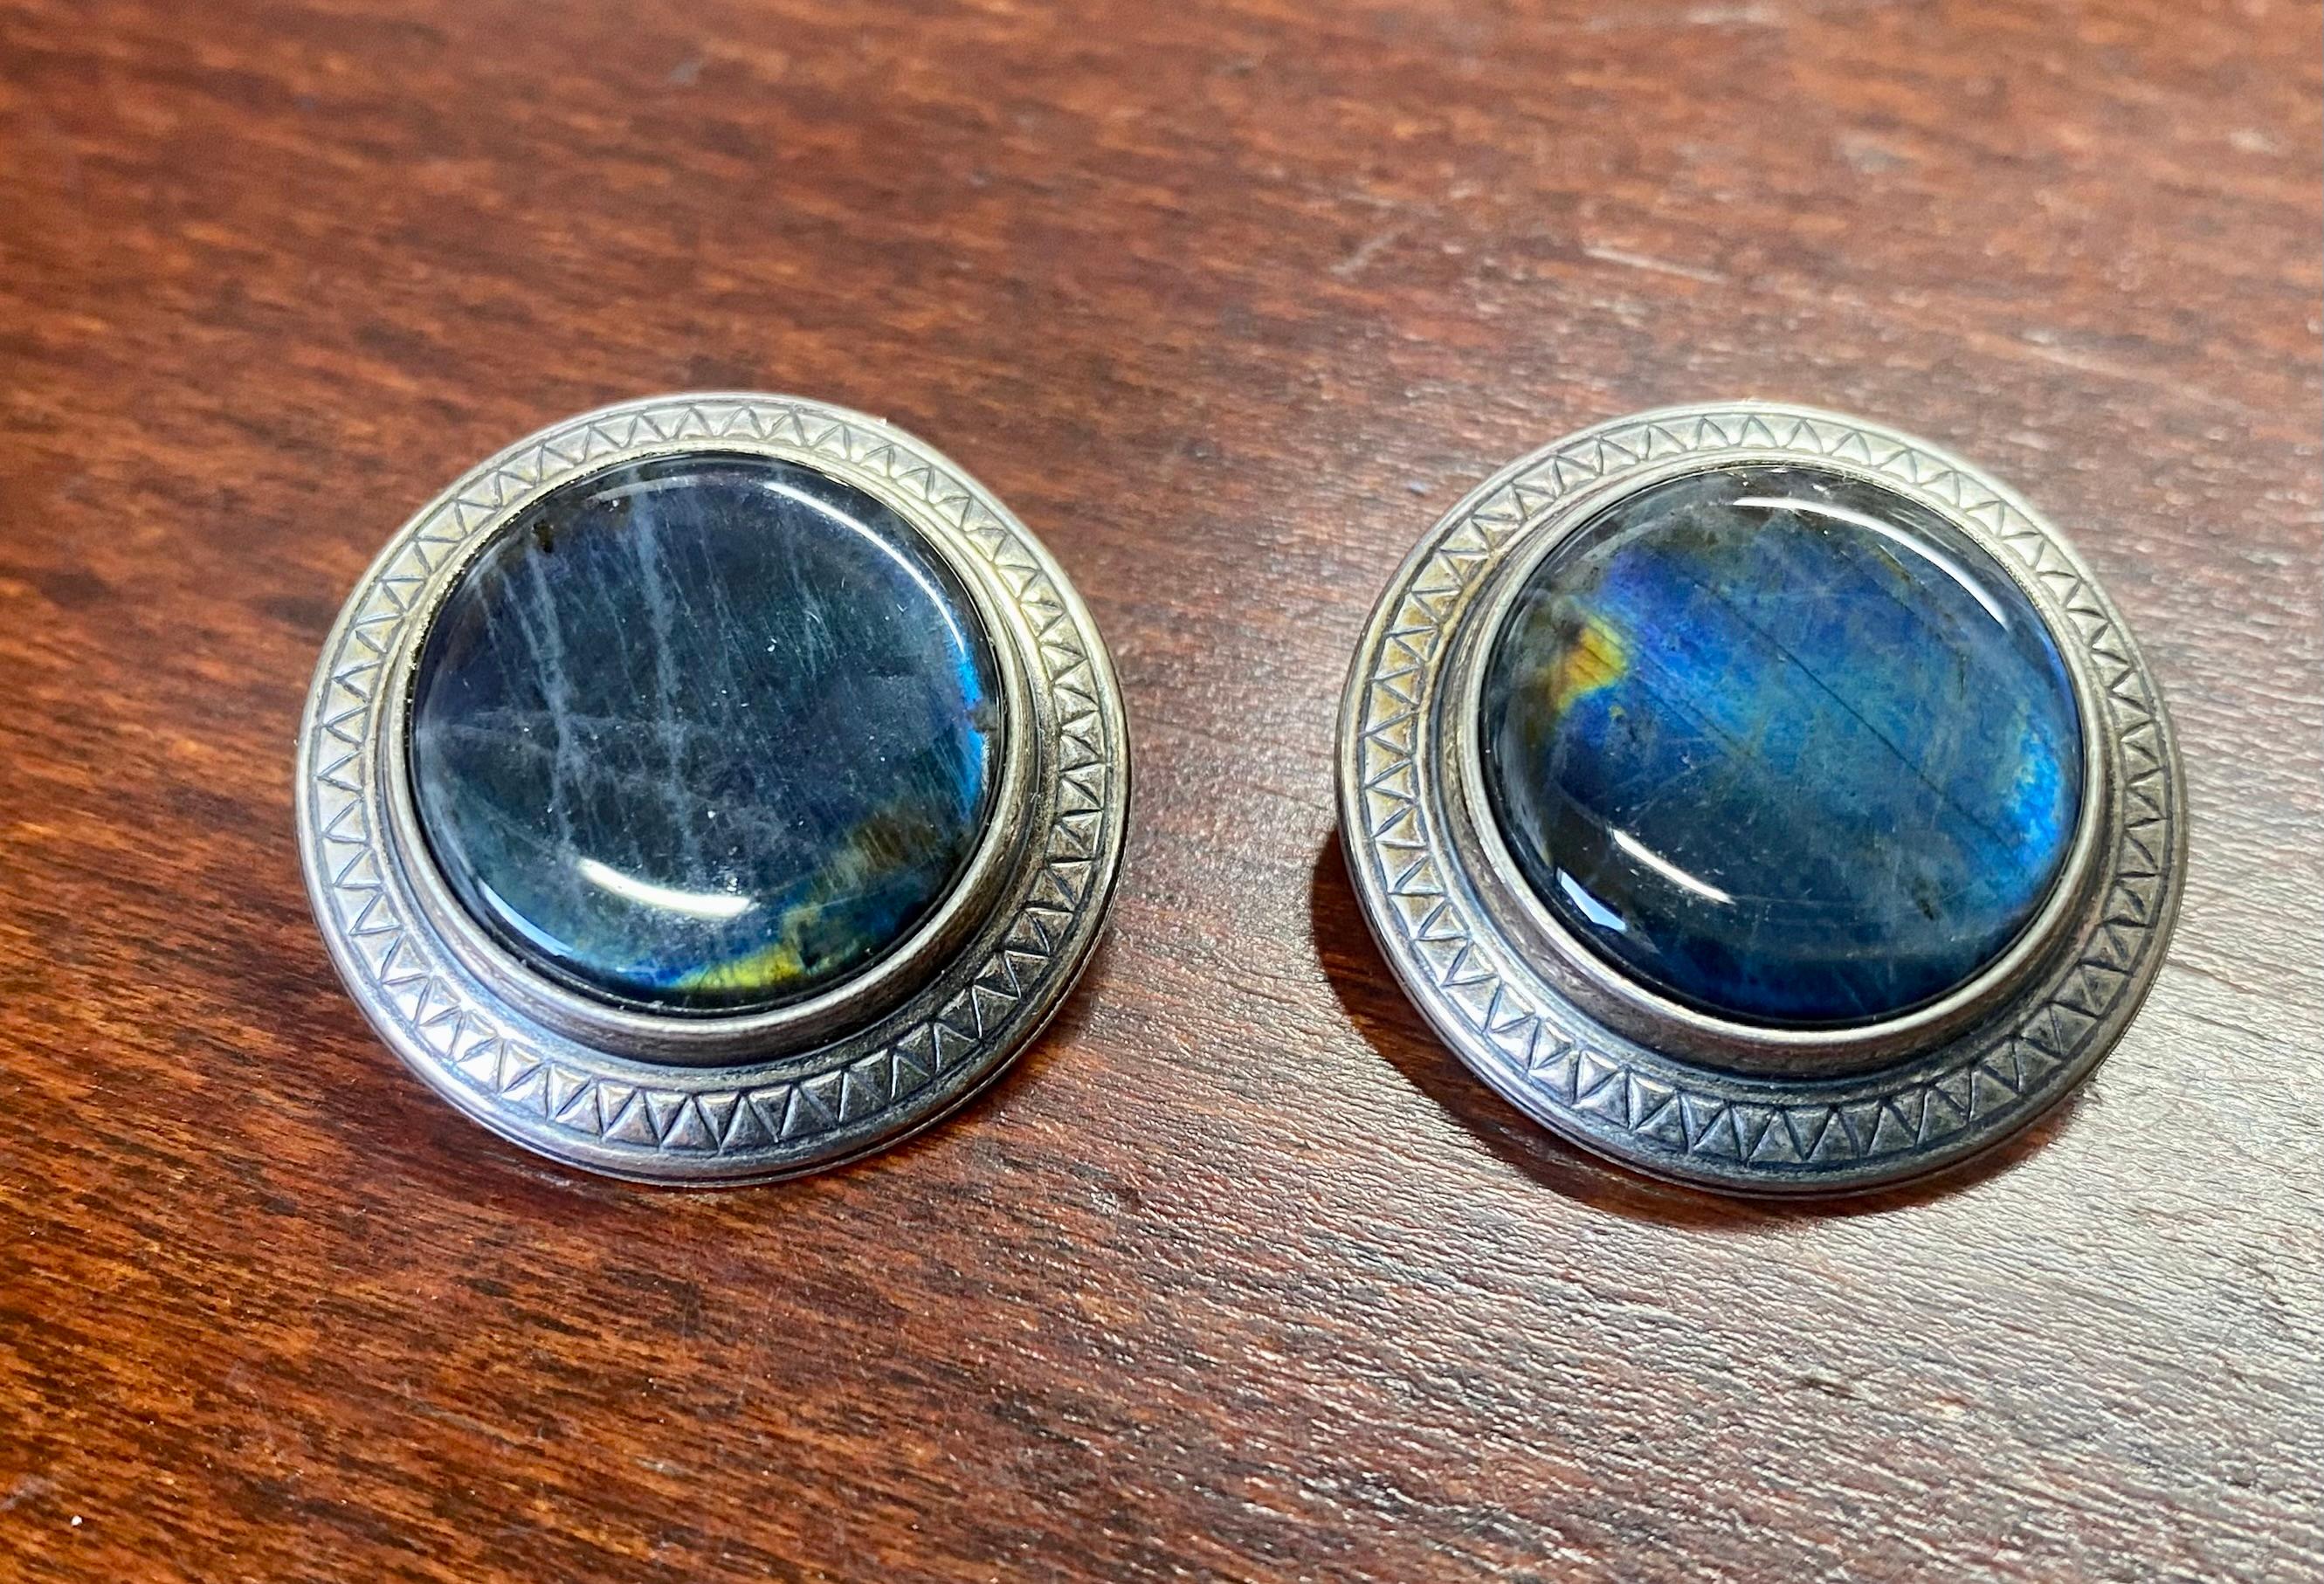 Silber 925H Spectrolite-Ohrringe Finnland Kalevala Jewelry.
Wirklich schöne Stones.
Der blaugrüne Spectrolite schimmert wunderschön im Licht.
Ich habe auch eine Halskette aus der gleichen Serie zu verkaufen. Siehe das Weinbild.
Schöne Ohrringe.